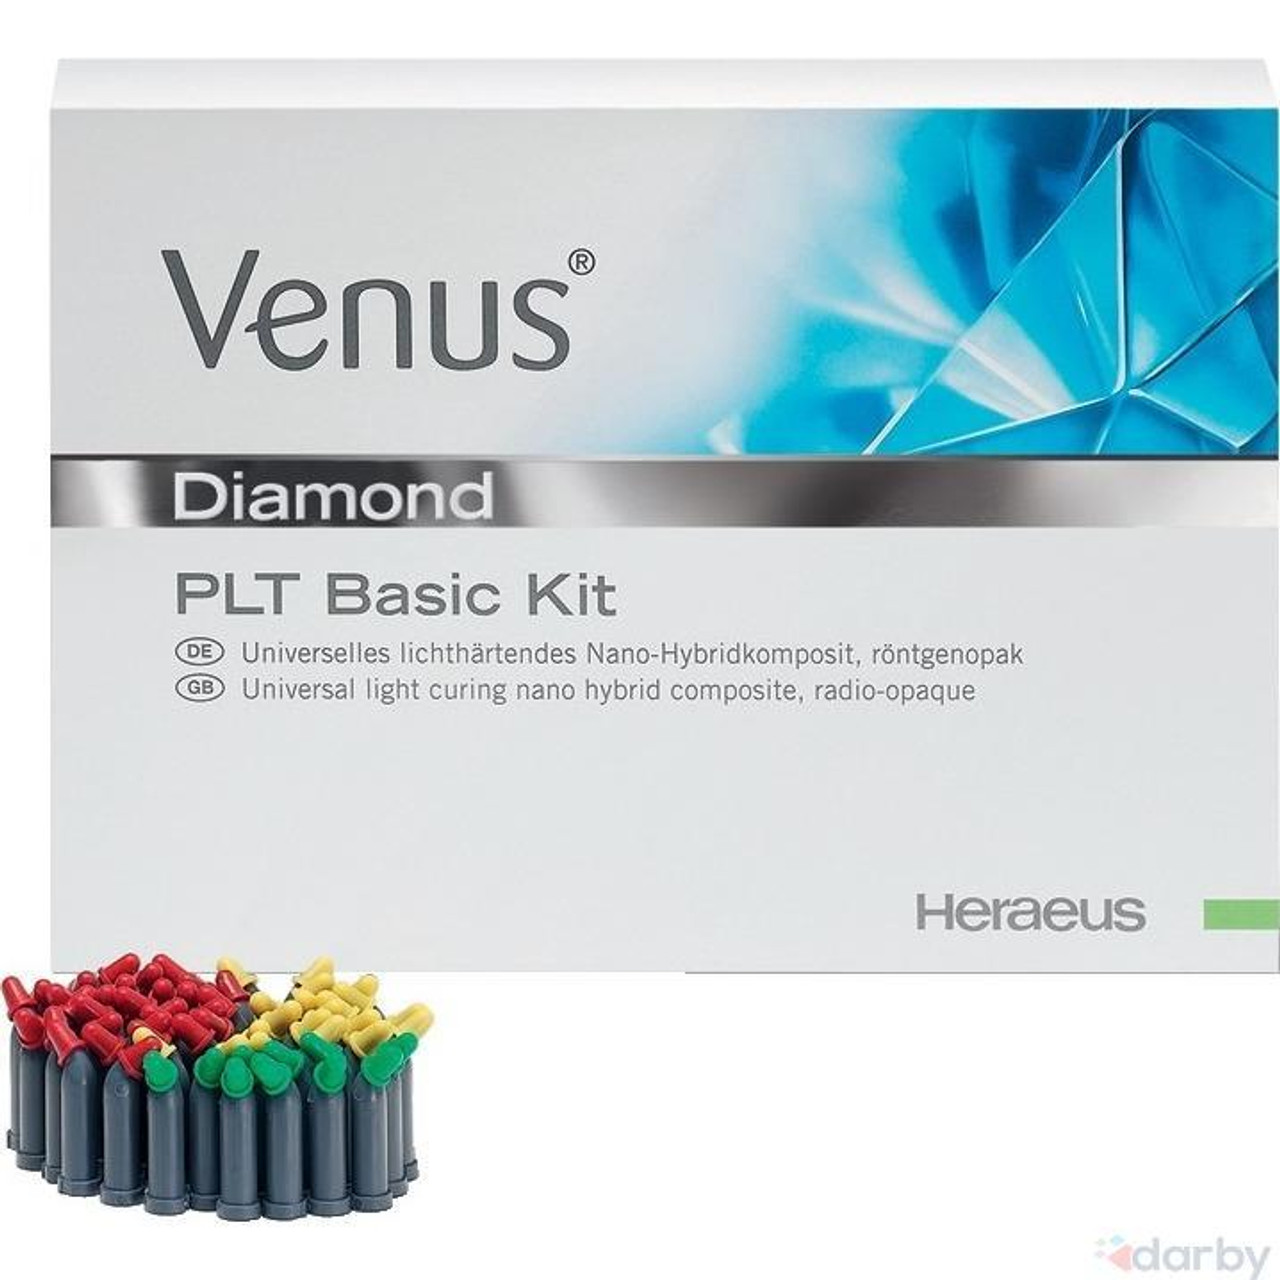 Venus Diamond 2-Layer, Shade Guide